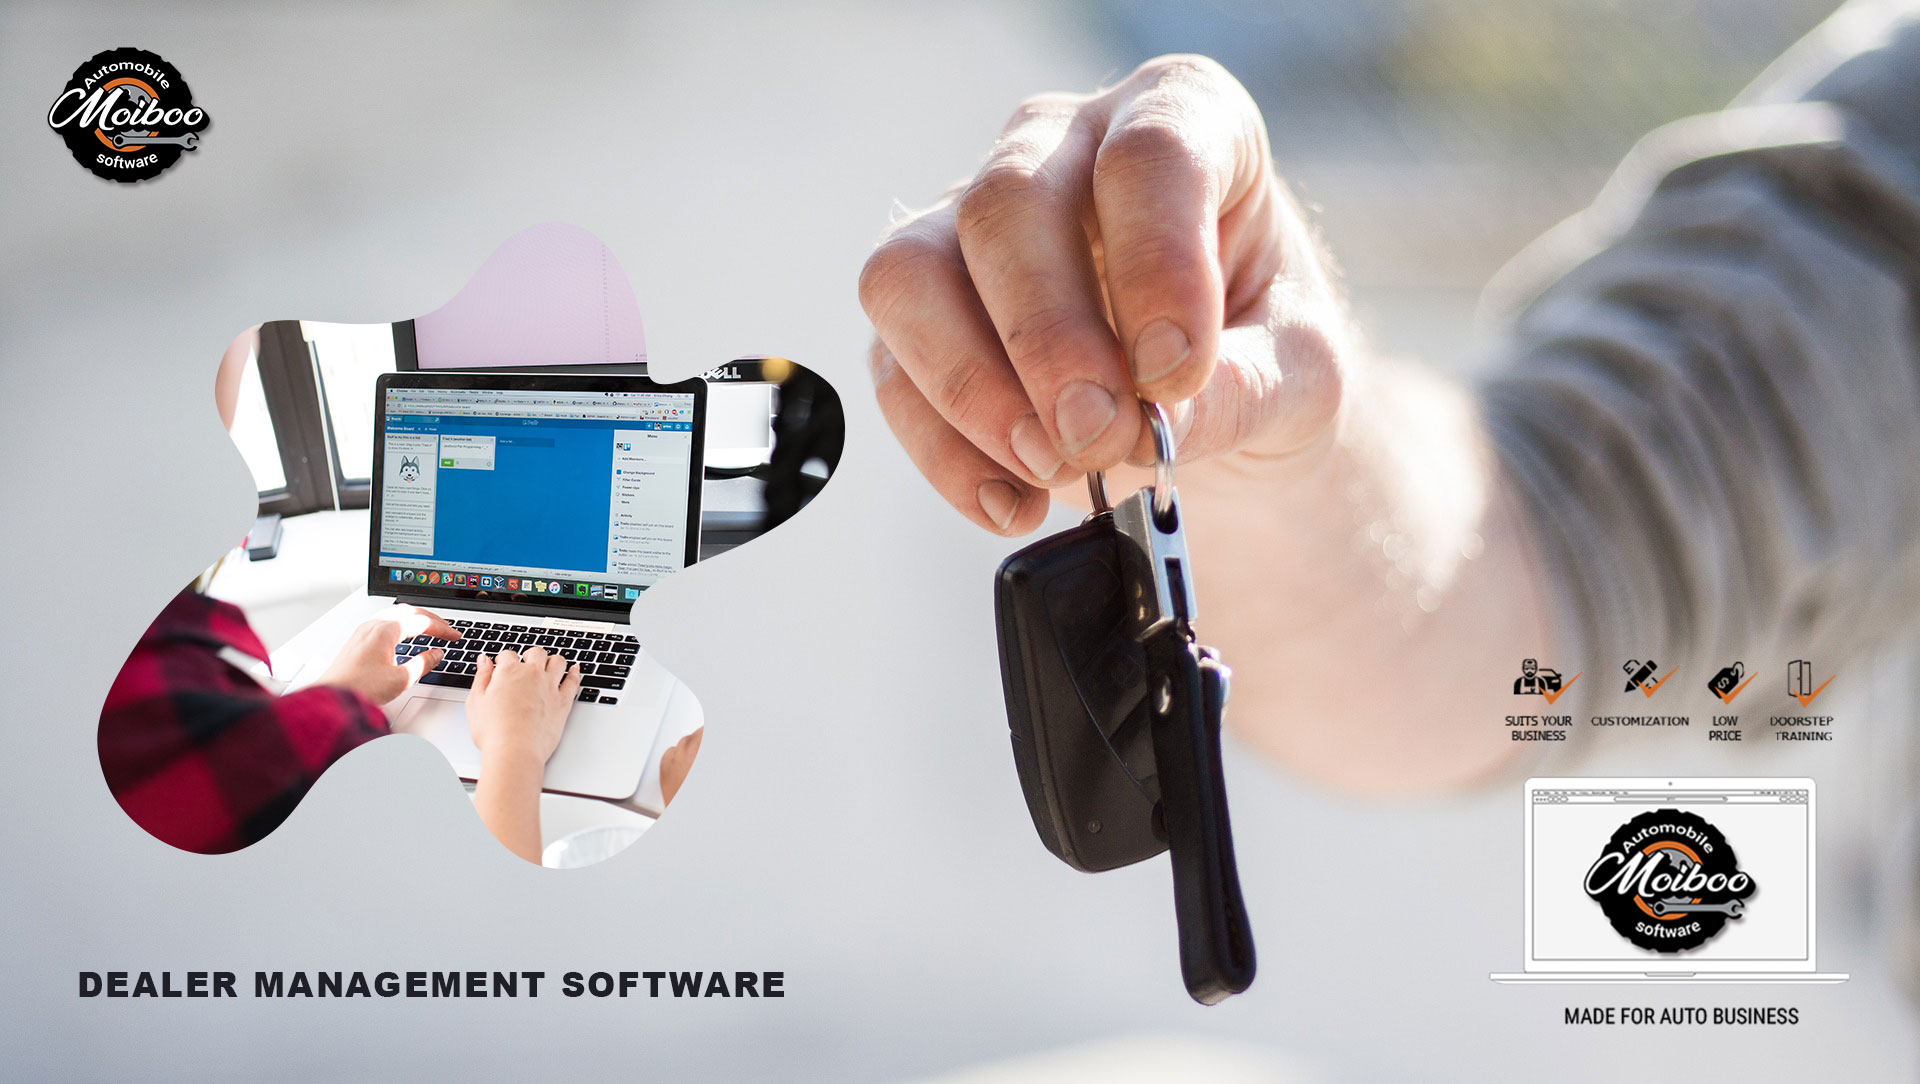 Auto Dealer Management Software